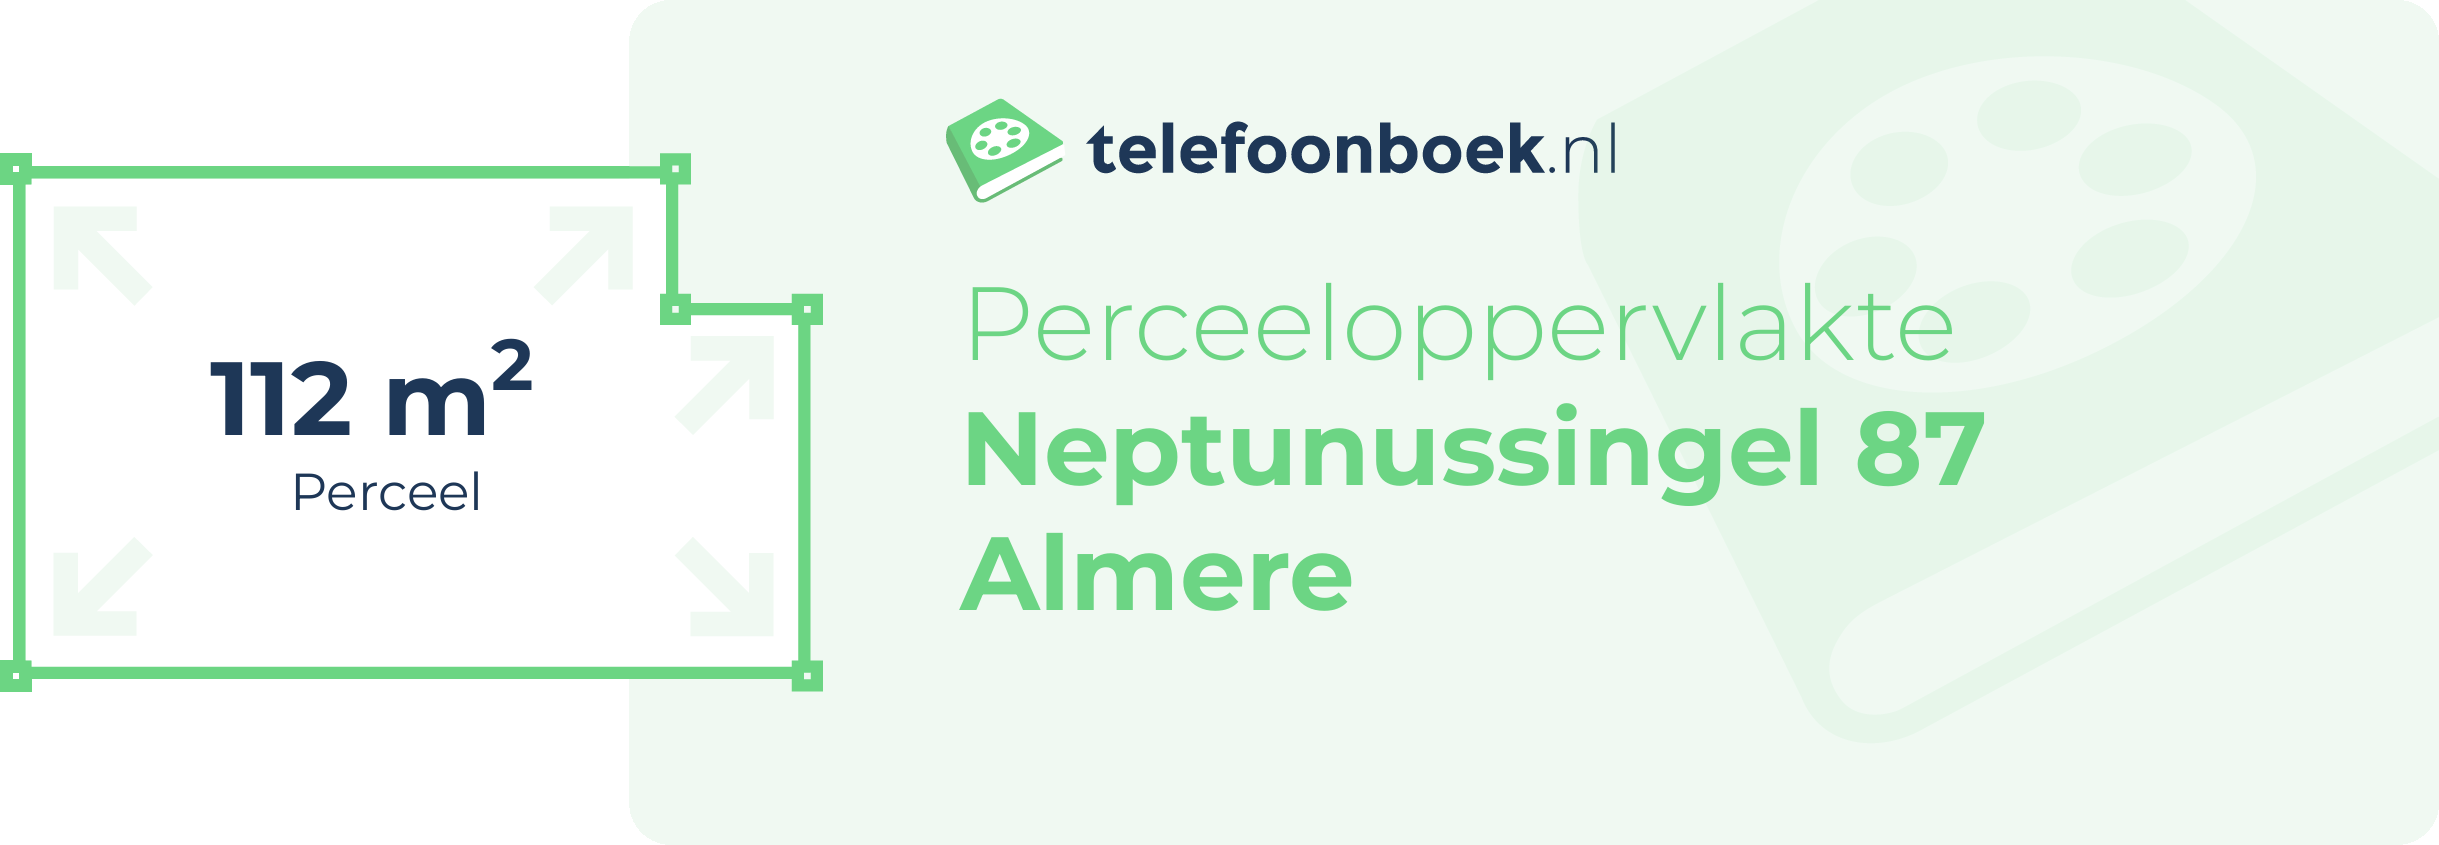 Perceeloppervlakte Neptunussingel 87 Almere